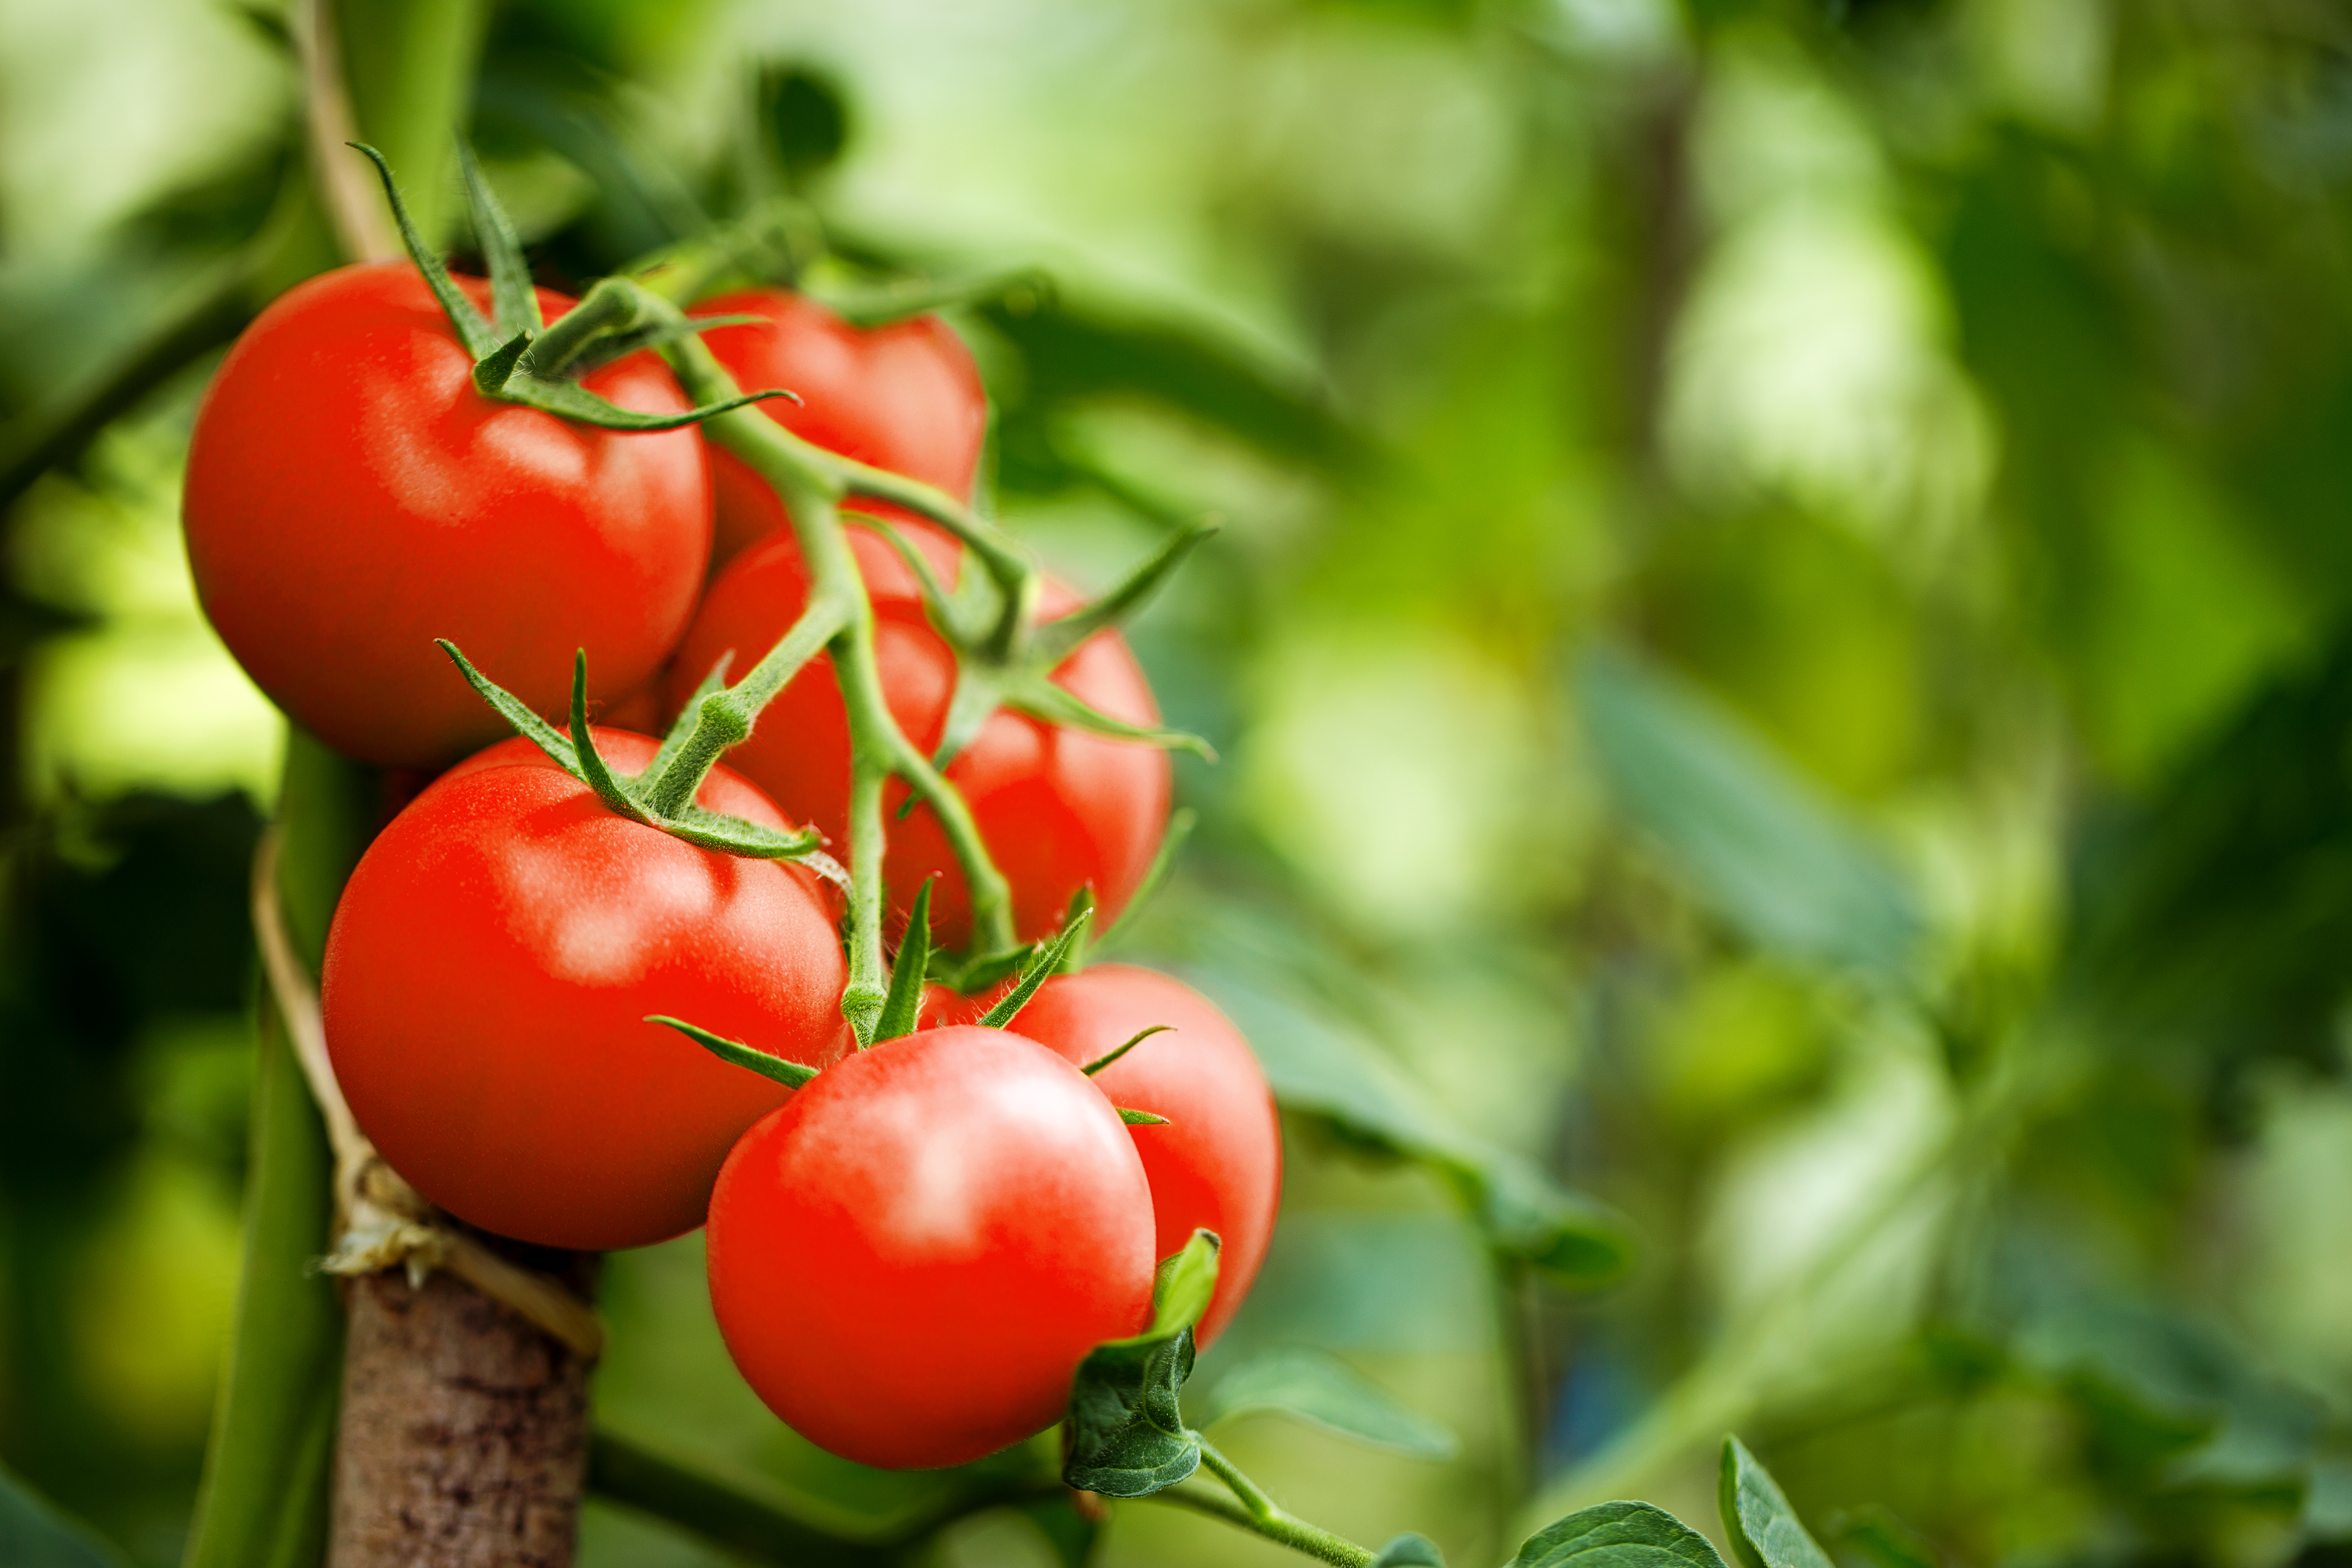 Comment tailler les tomates pour récolter plus ? Copyright (c) 2017 eugenegurkov/Shutterstock.